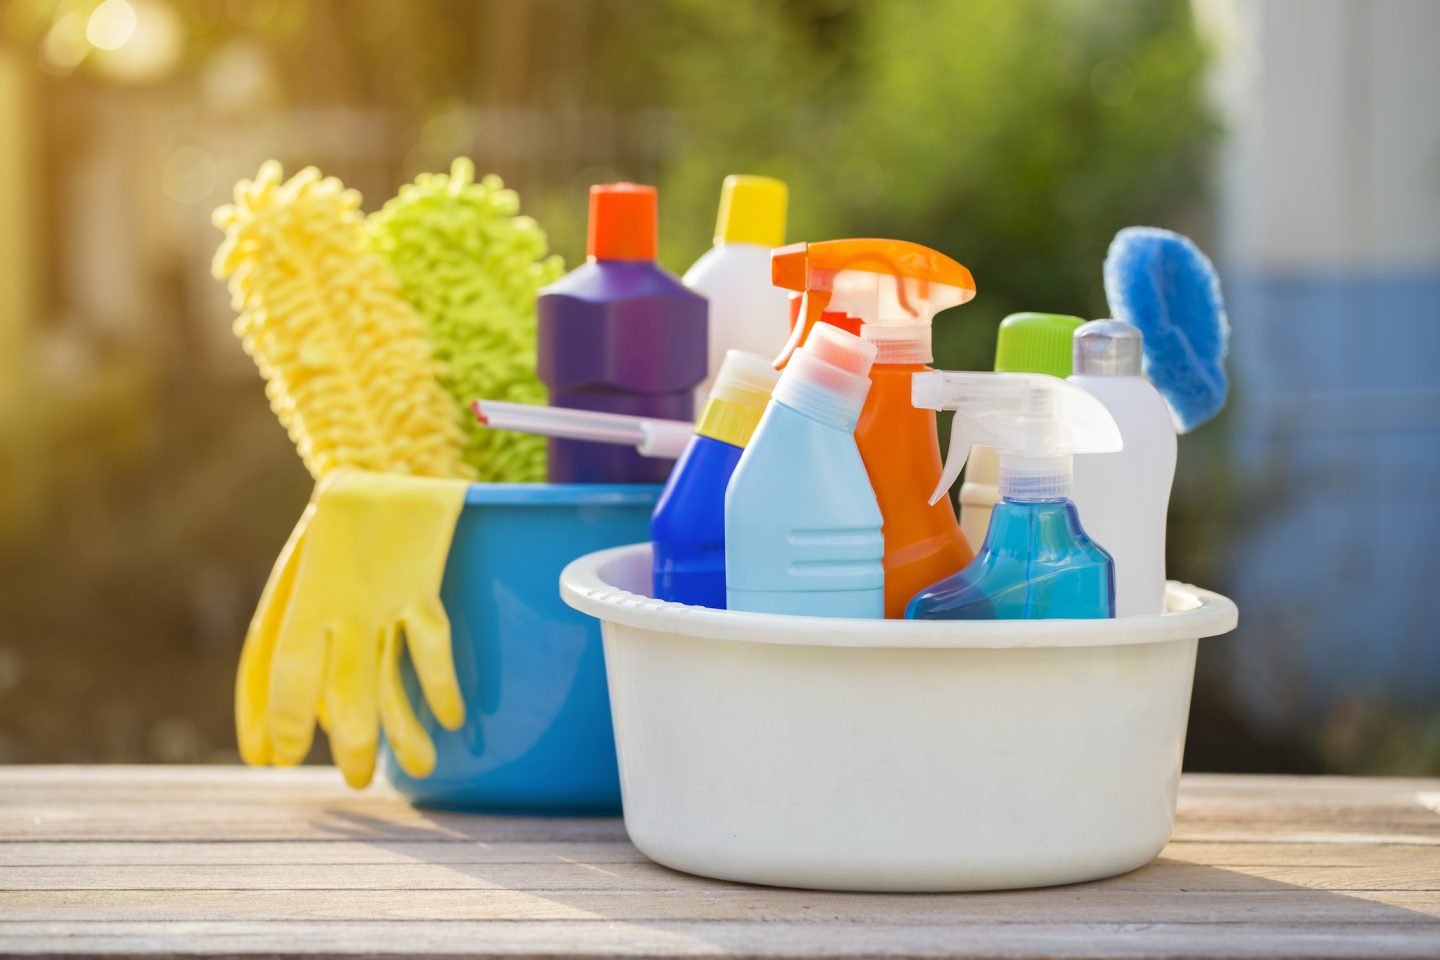 ما مدى أمان منتجات التنظيف؟ قد تكون المنظفات المنزلية خطيرة وتستحق اهتمامك